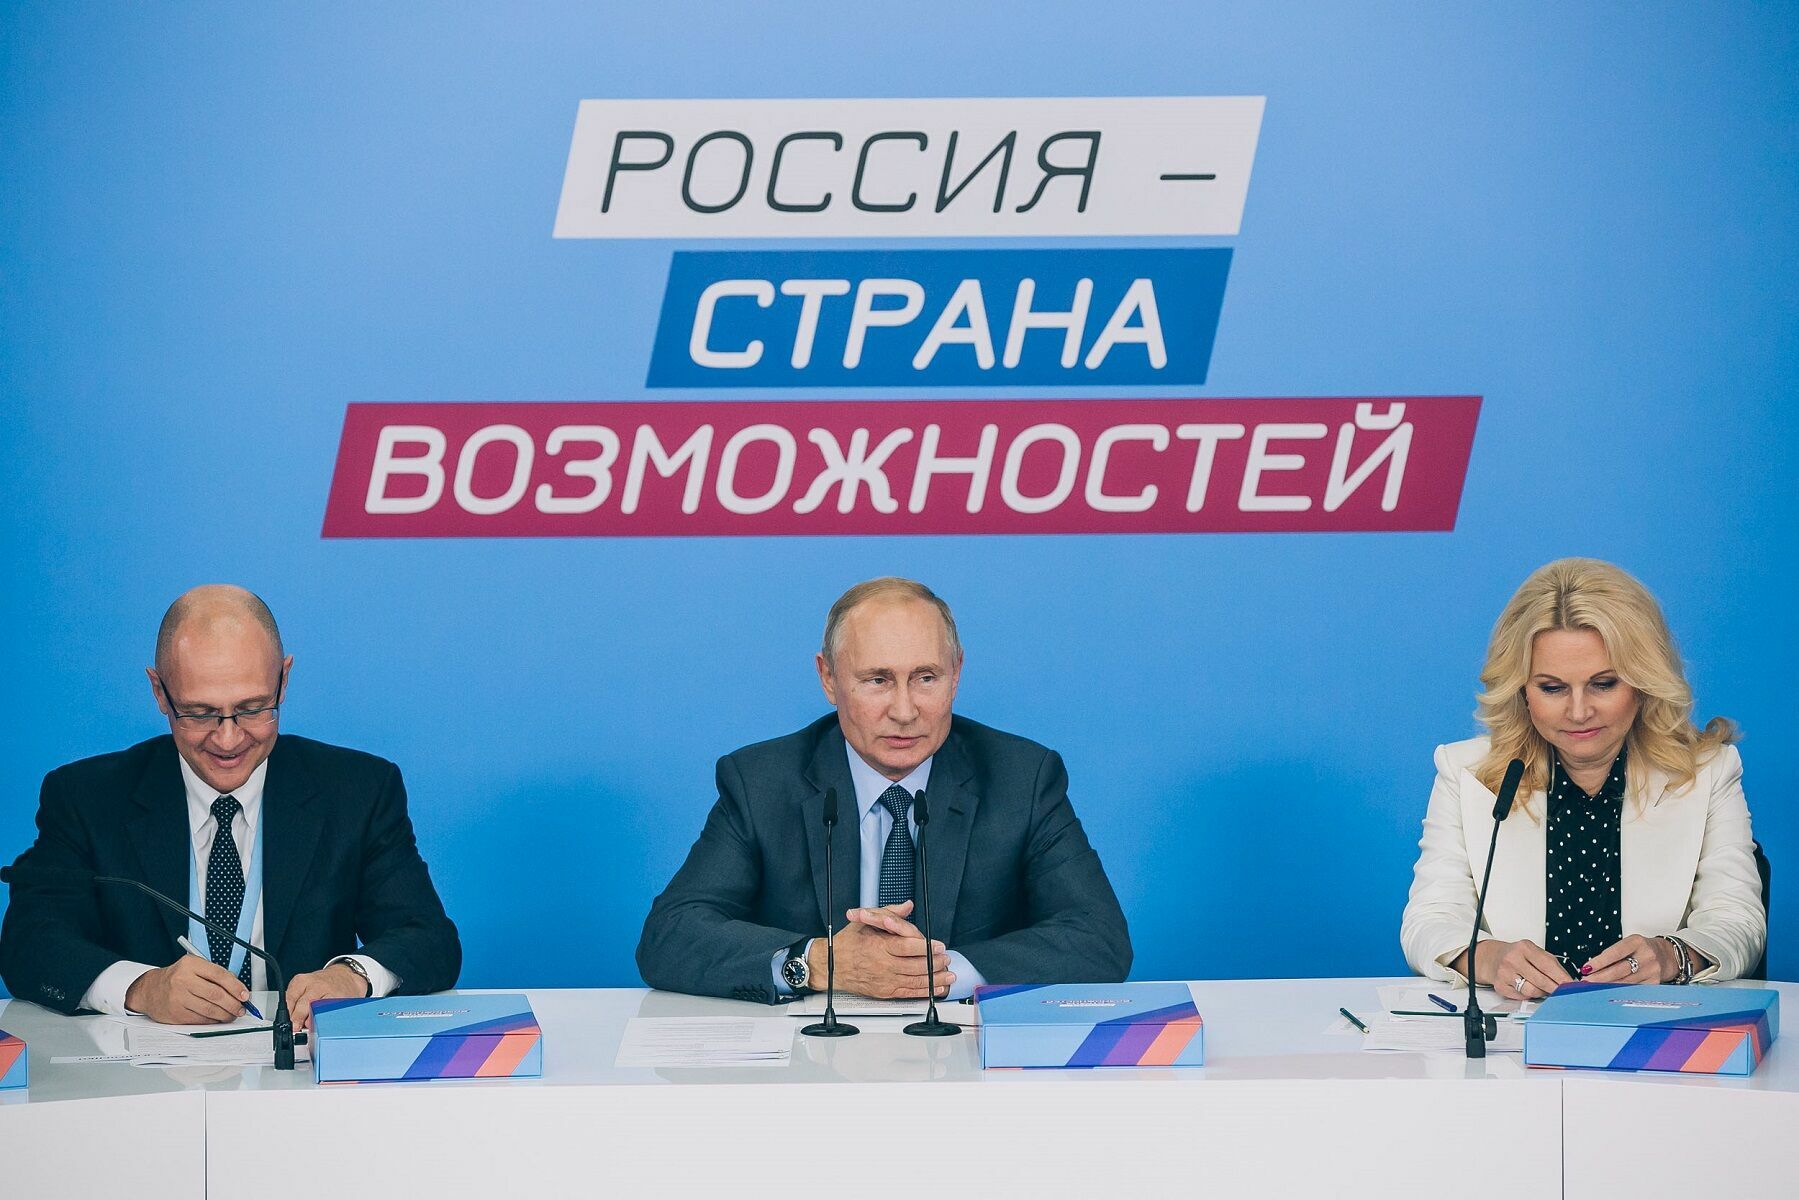 Путин поддержал проведение форума "Россия - страна возможностей" в 2020 году